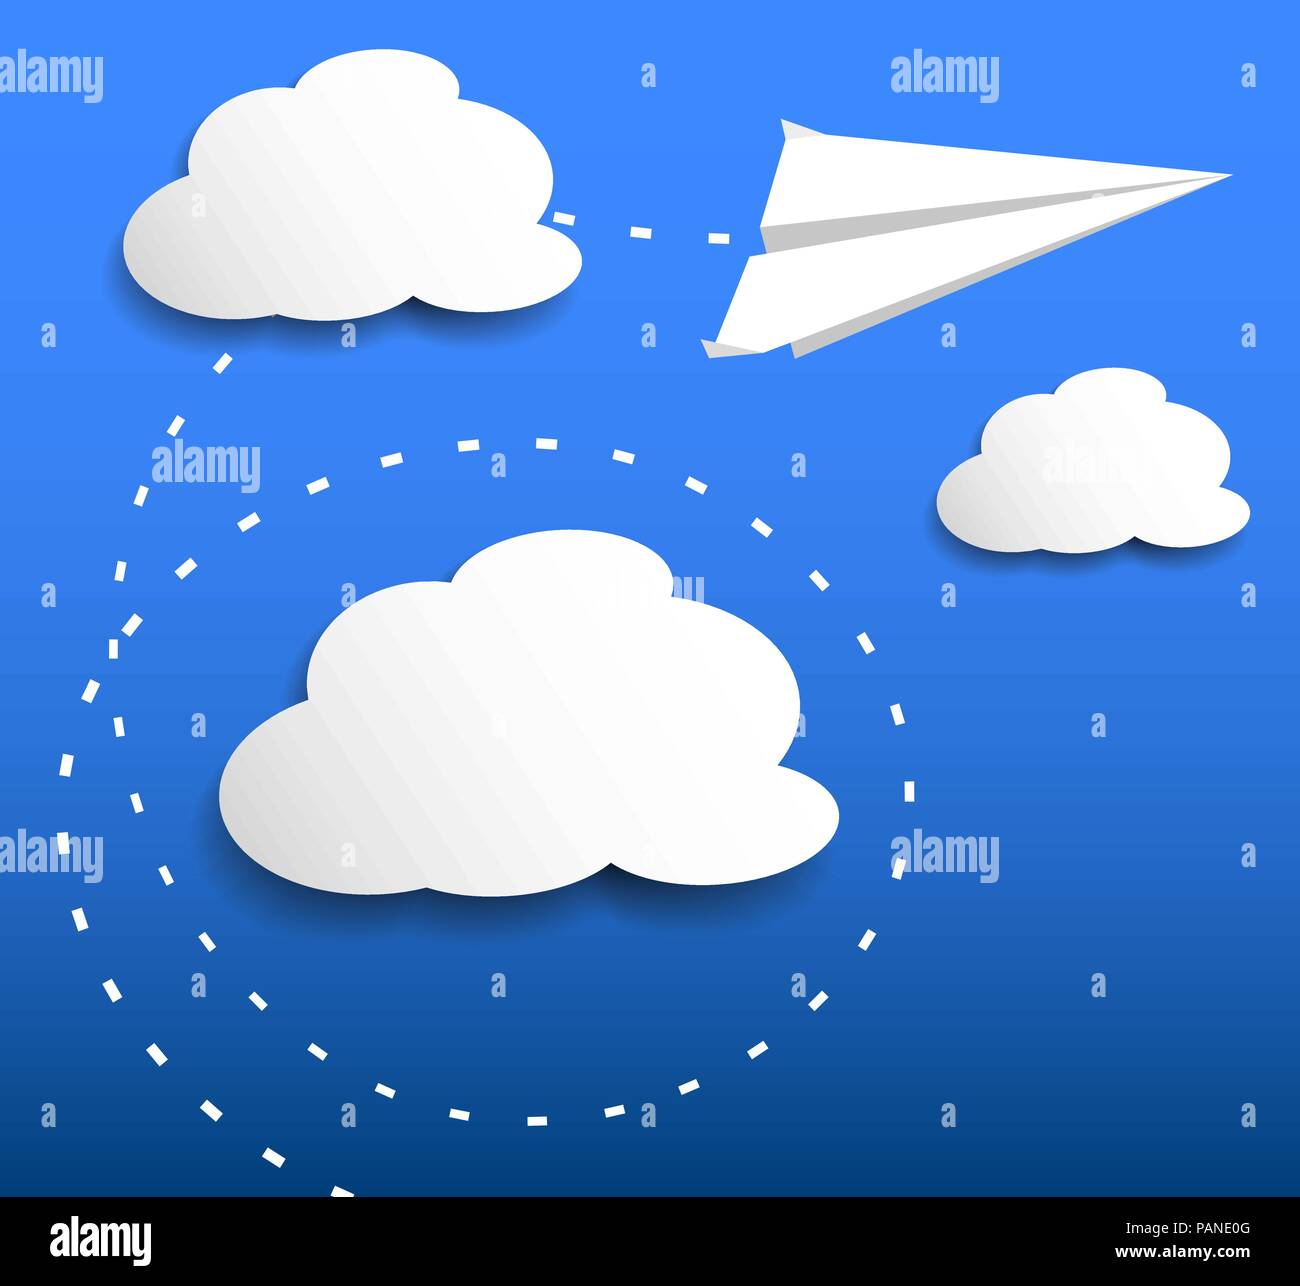 Aeroplano di carta flying attraverso le nuvole Illustrazione Vettoriale